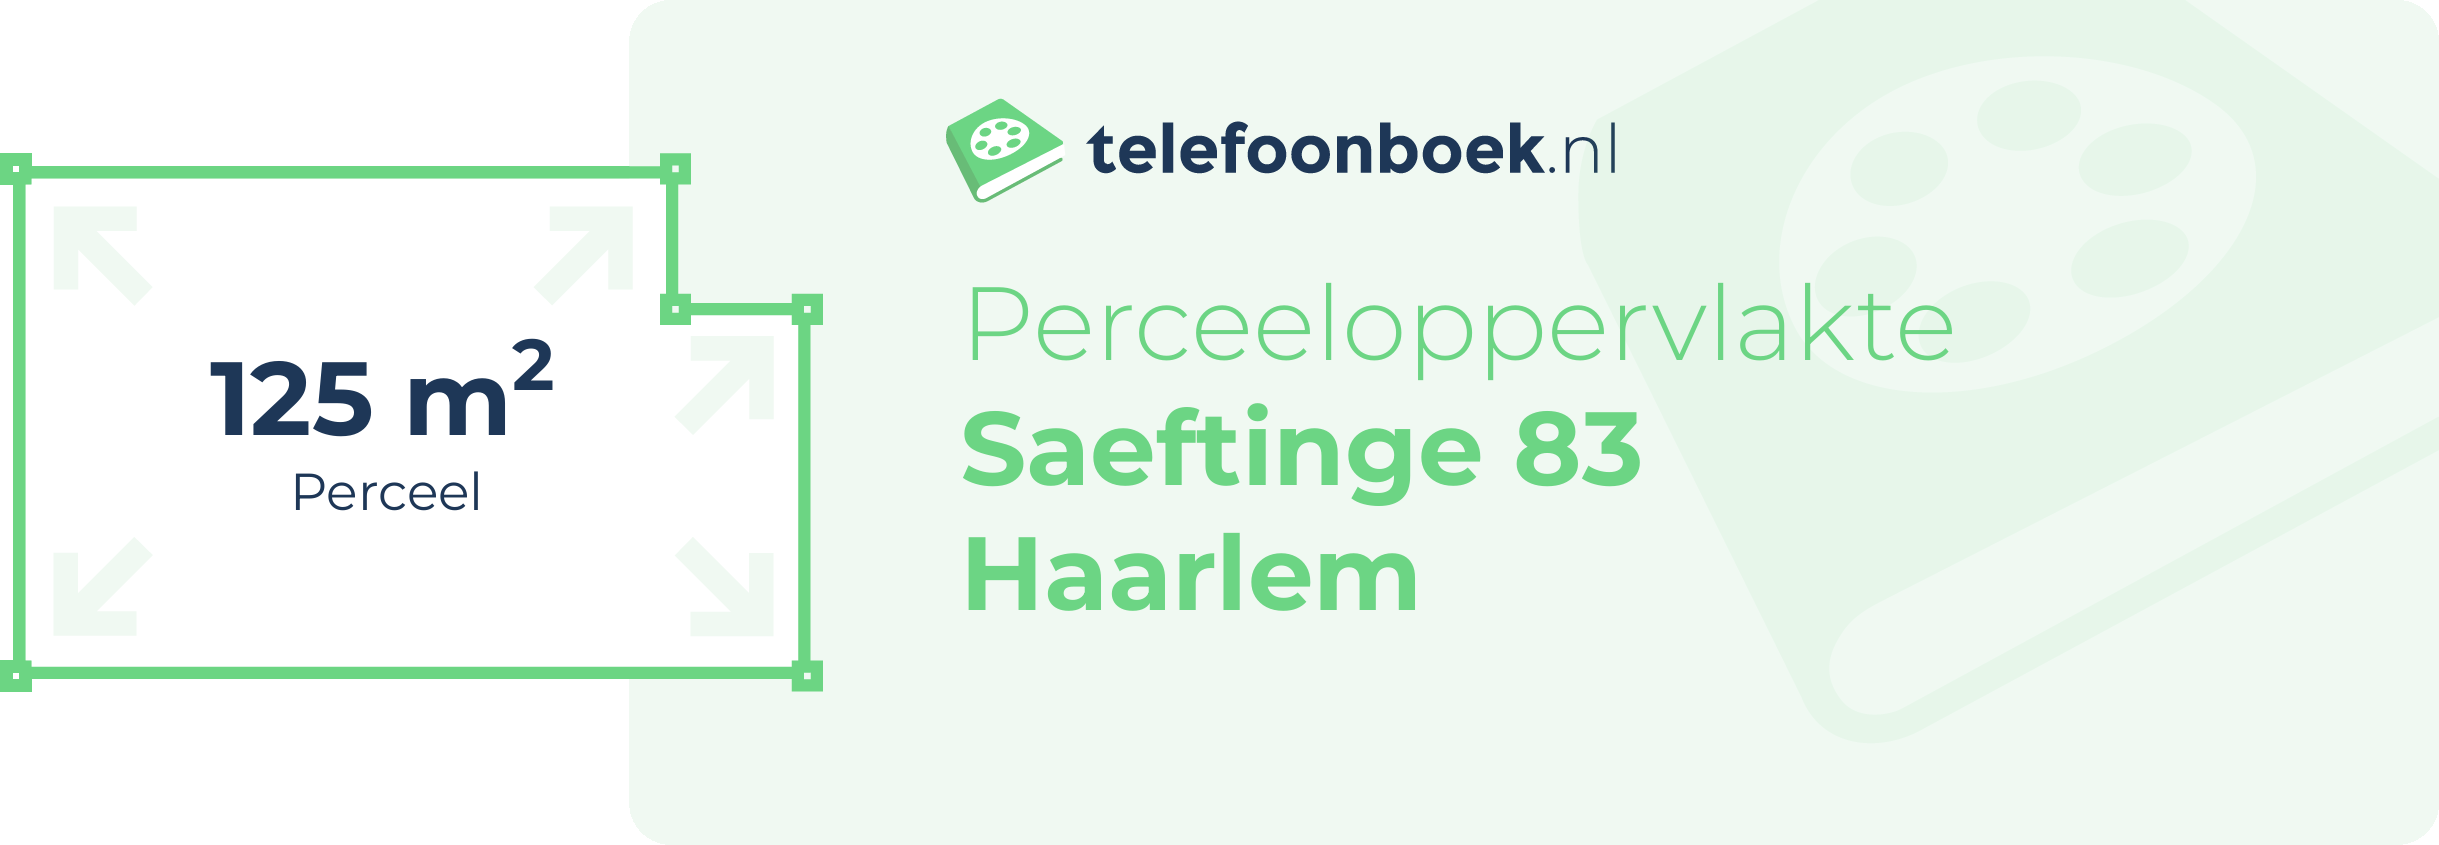 Perceeloppervlakte Saeftinge 83 Haarlem